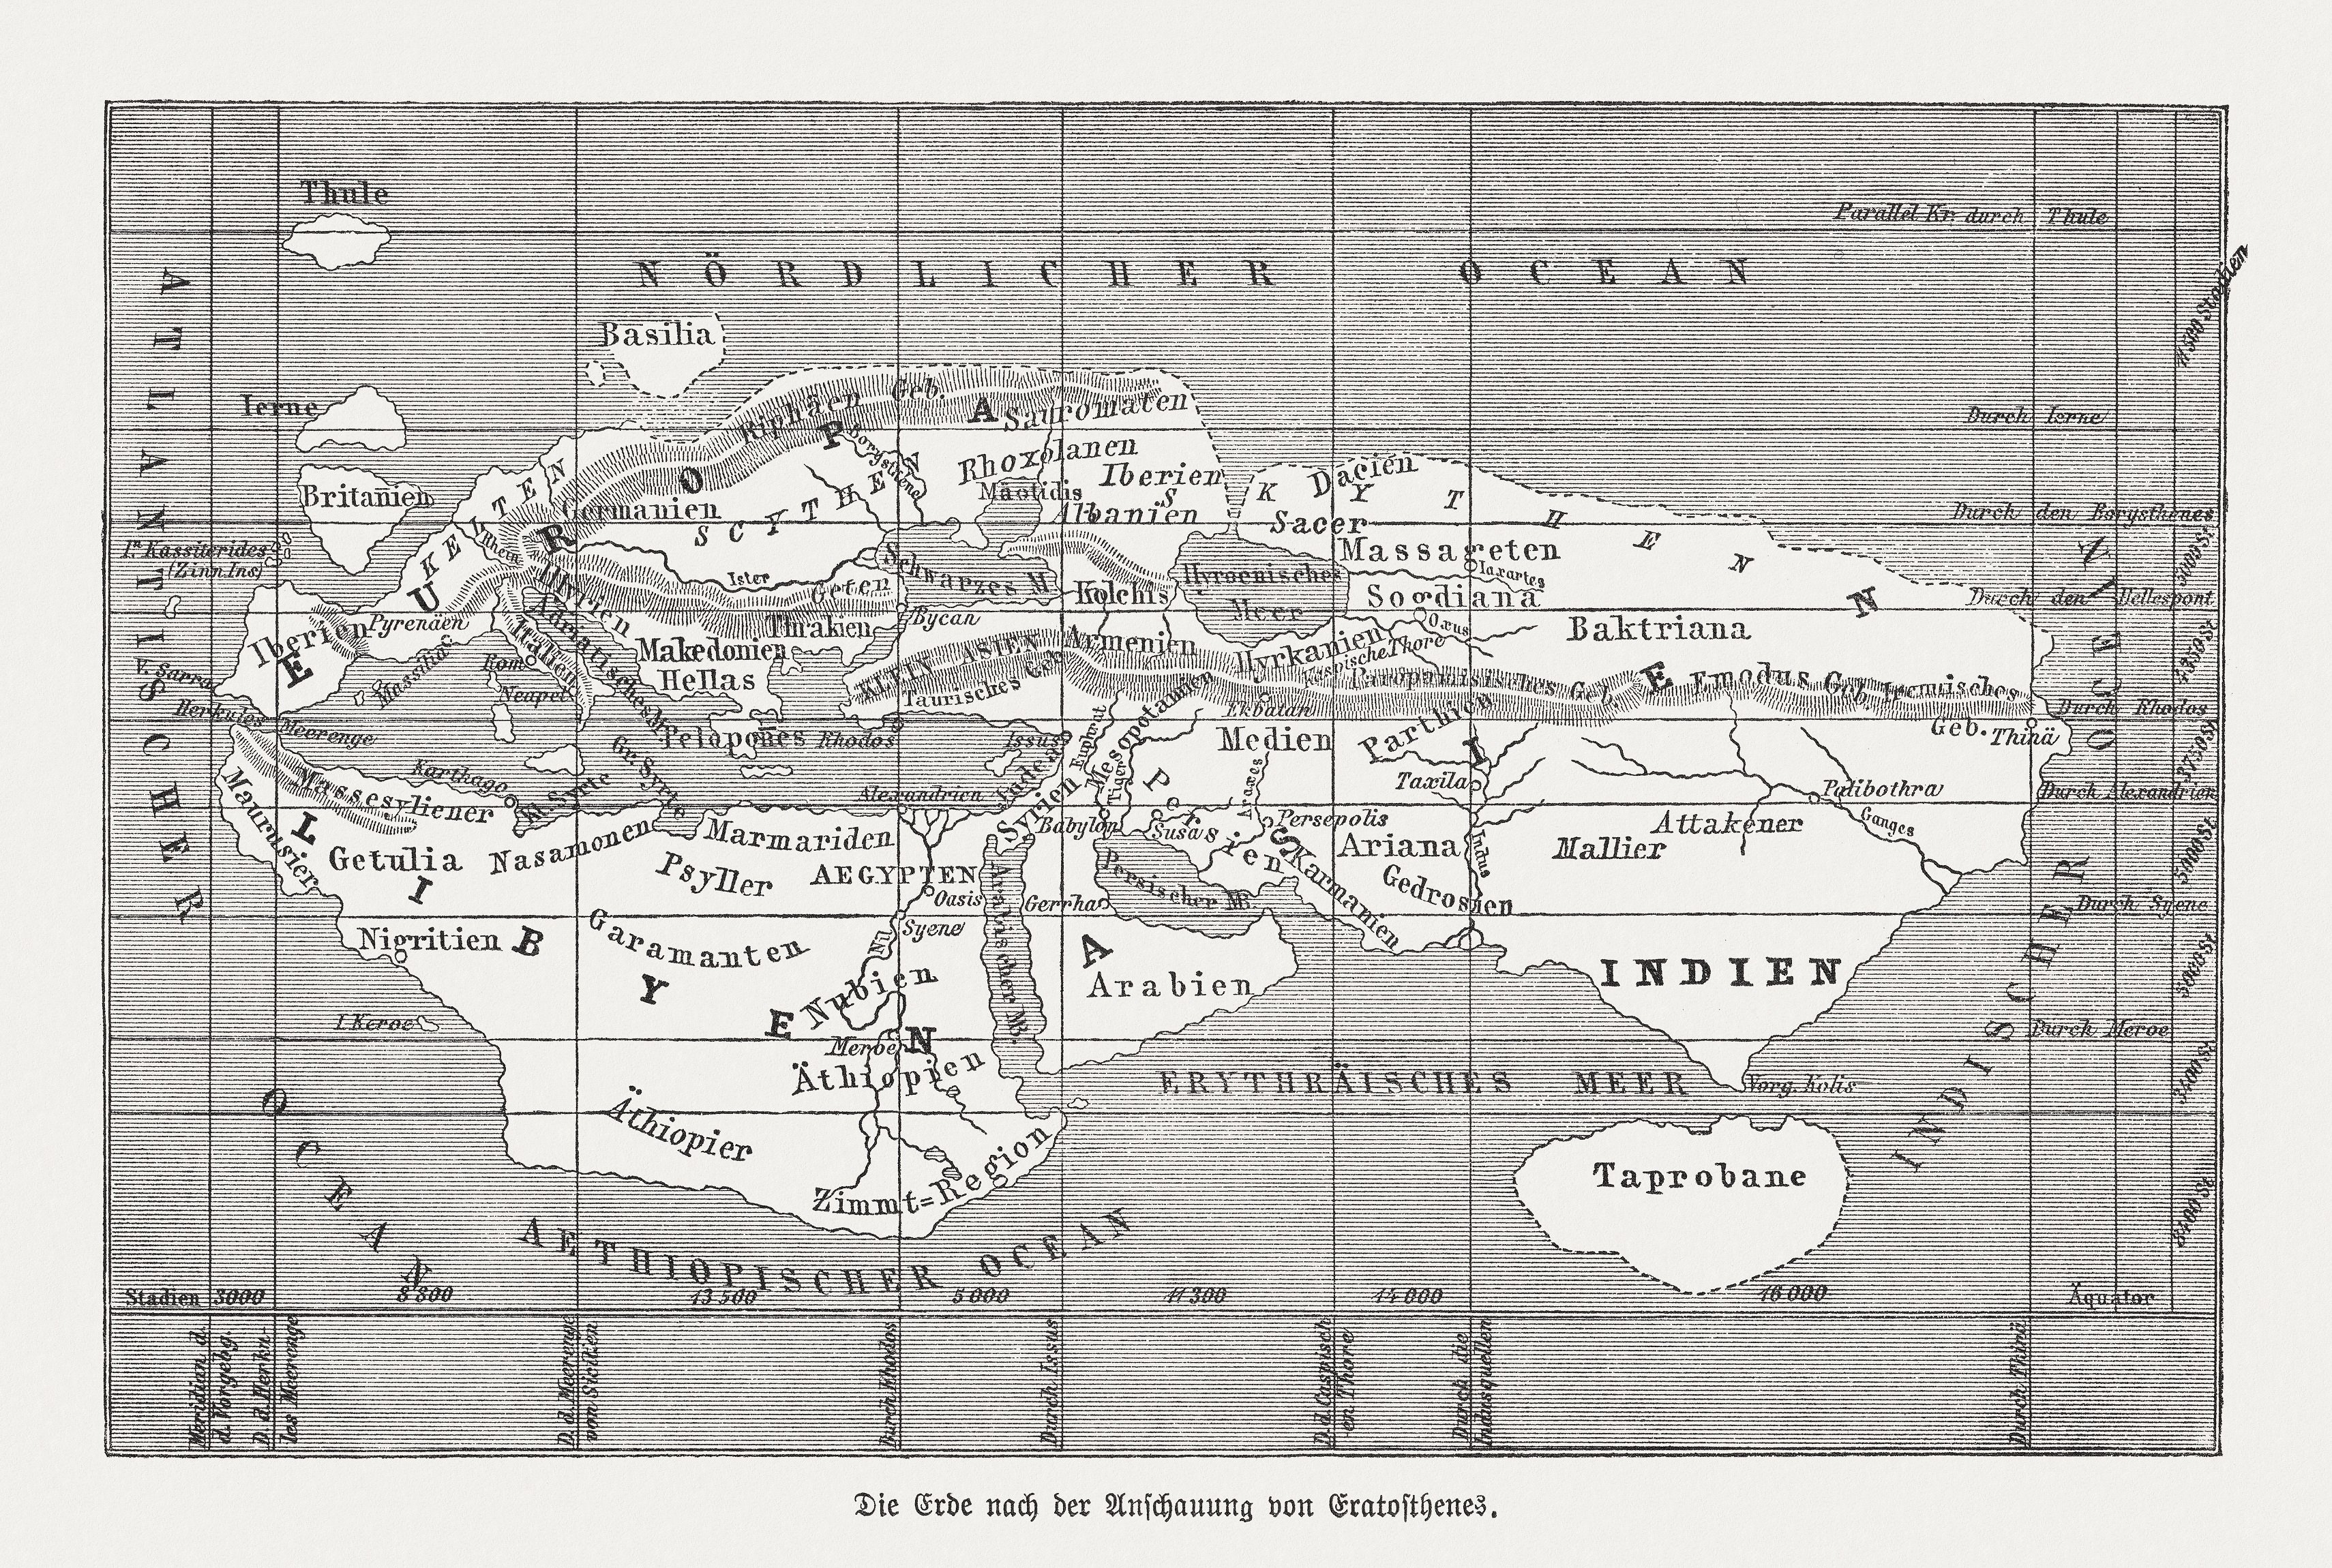 Mapa-múndi segundo Eratóstenes de Cirene. Gravura em madeira, publicada em 1888.